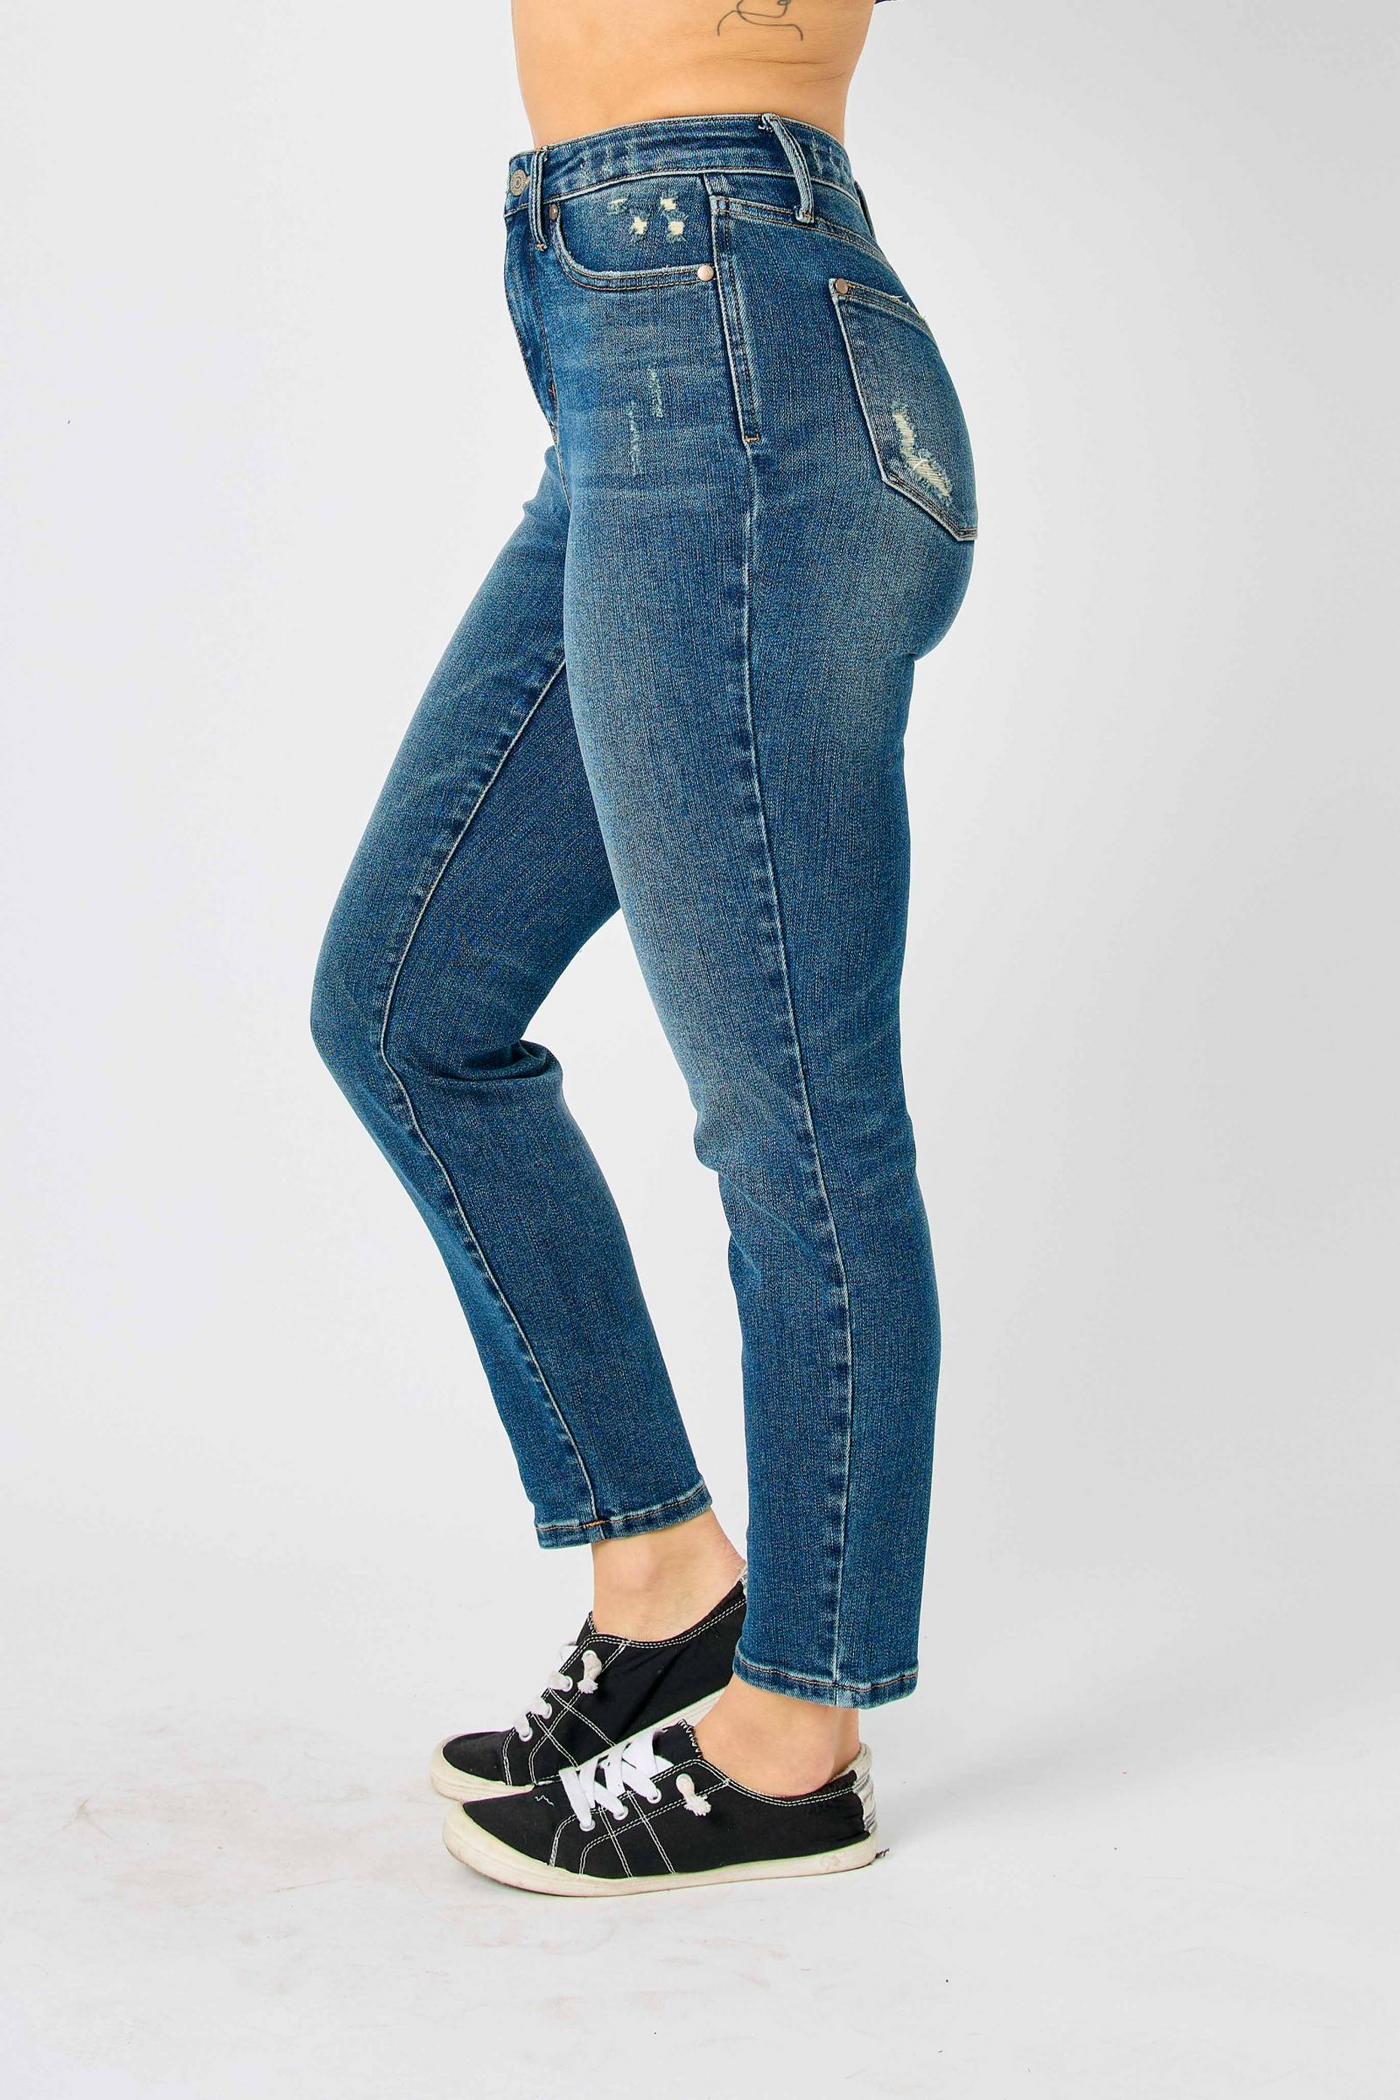 Judy Blue HW Girl's Best Friend Slim Fit Jeans